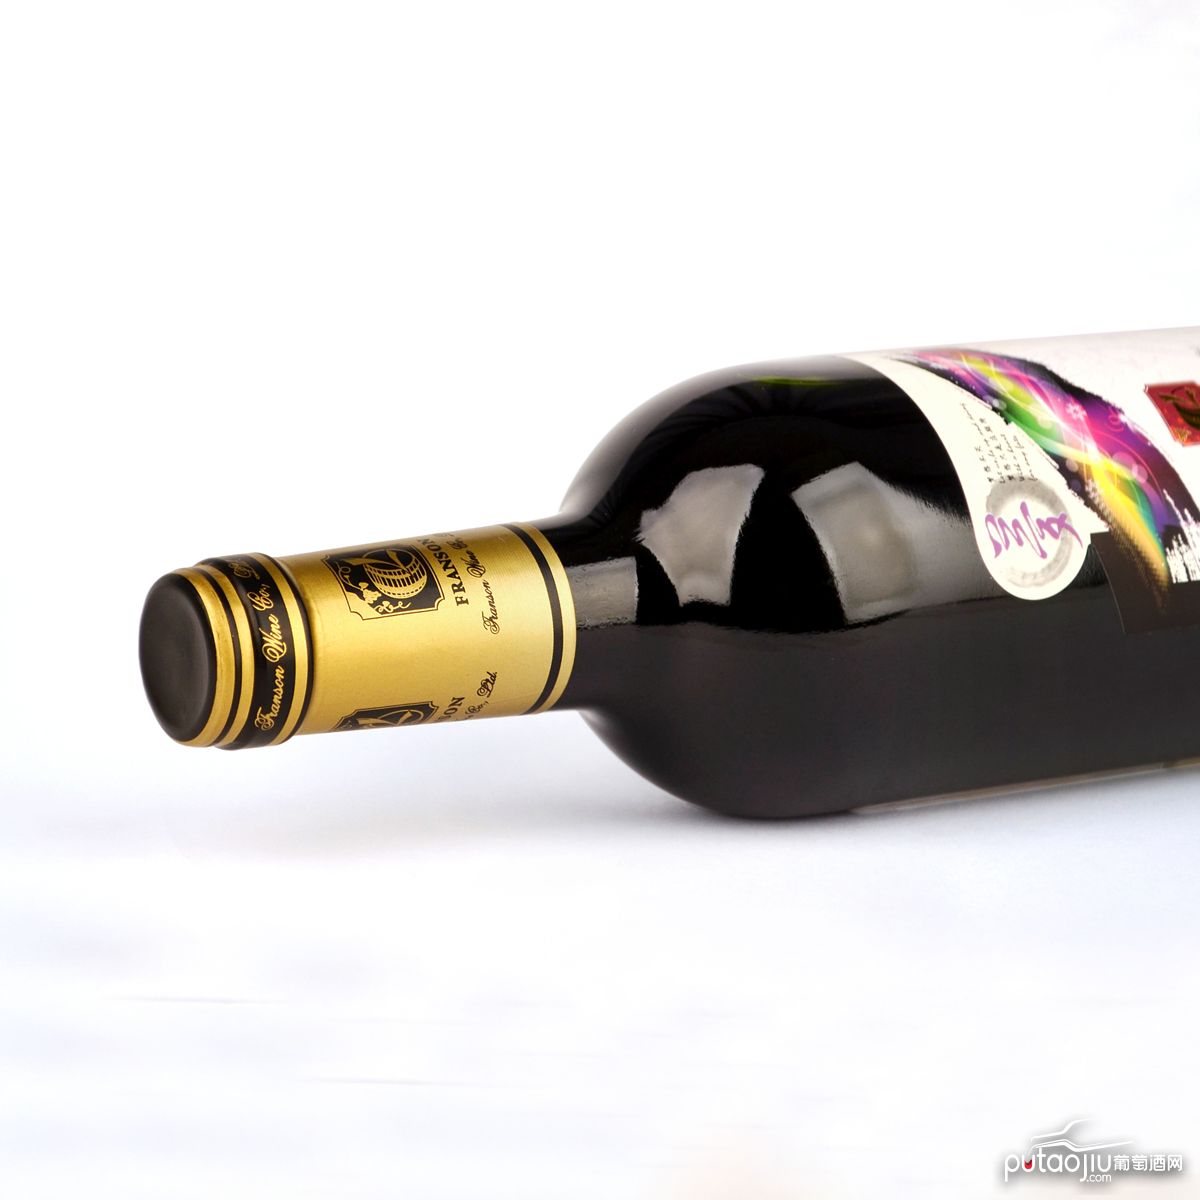 法国格拉芙Bel Air酒庄梦系列赤霞珠梅洛204干红葡萄酒